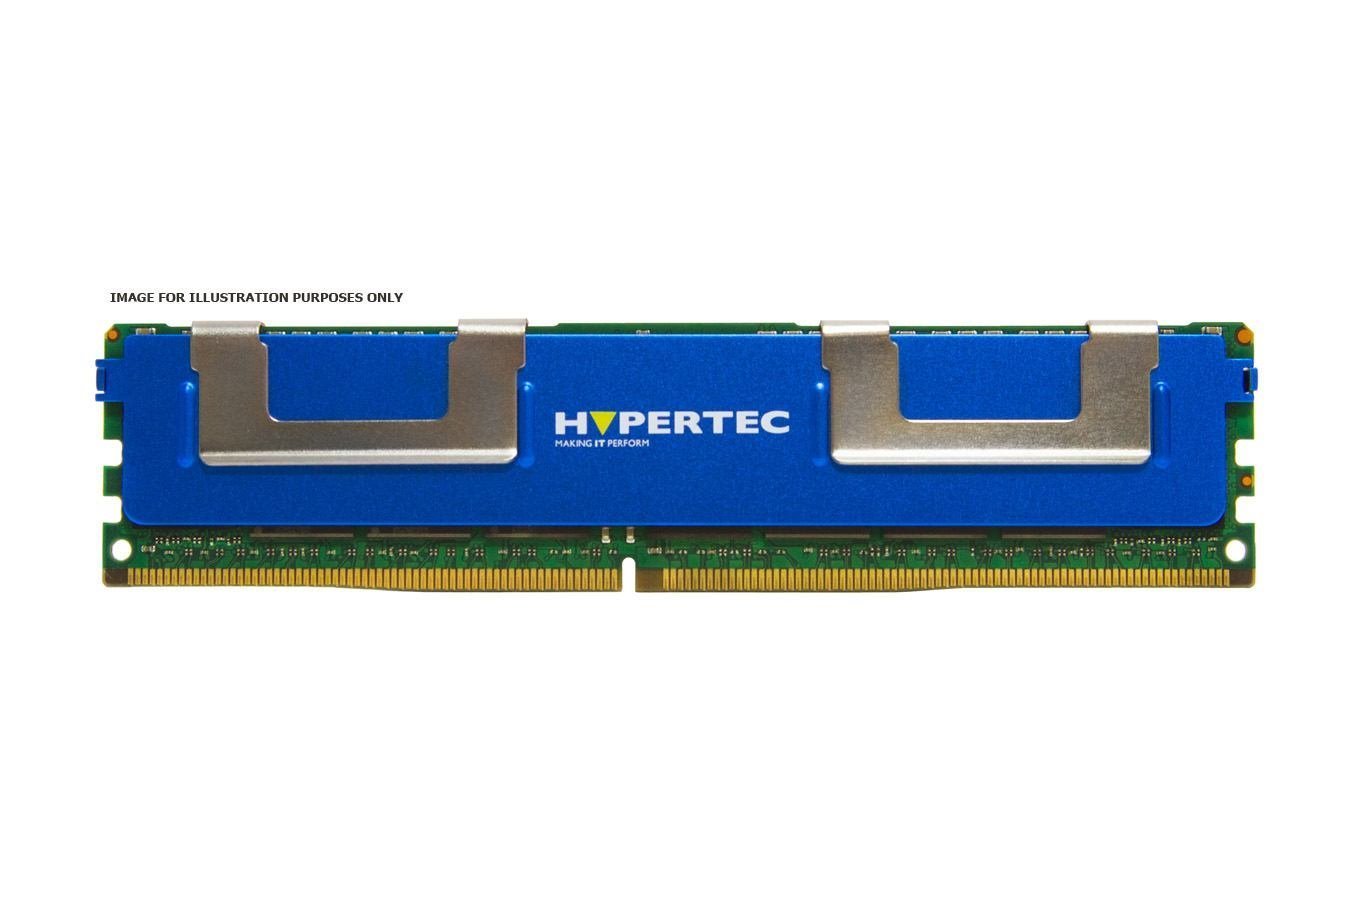 Hypertec RAM Module - 8 GB (1 x 8GB) - DDR3-1333/PC3-10600 DDR3 SDRAM - 1333 MHz